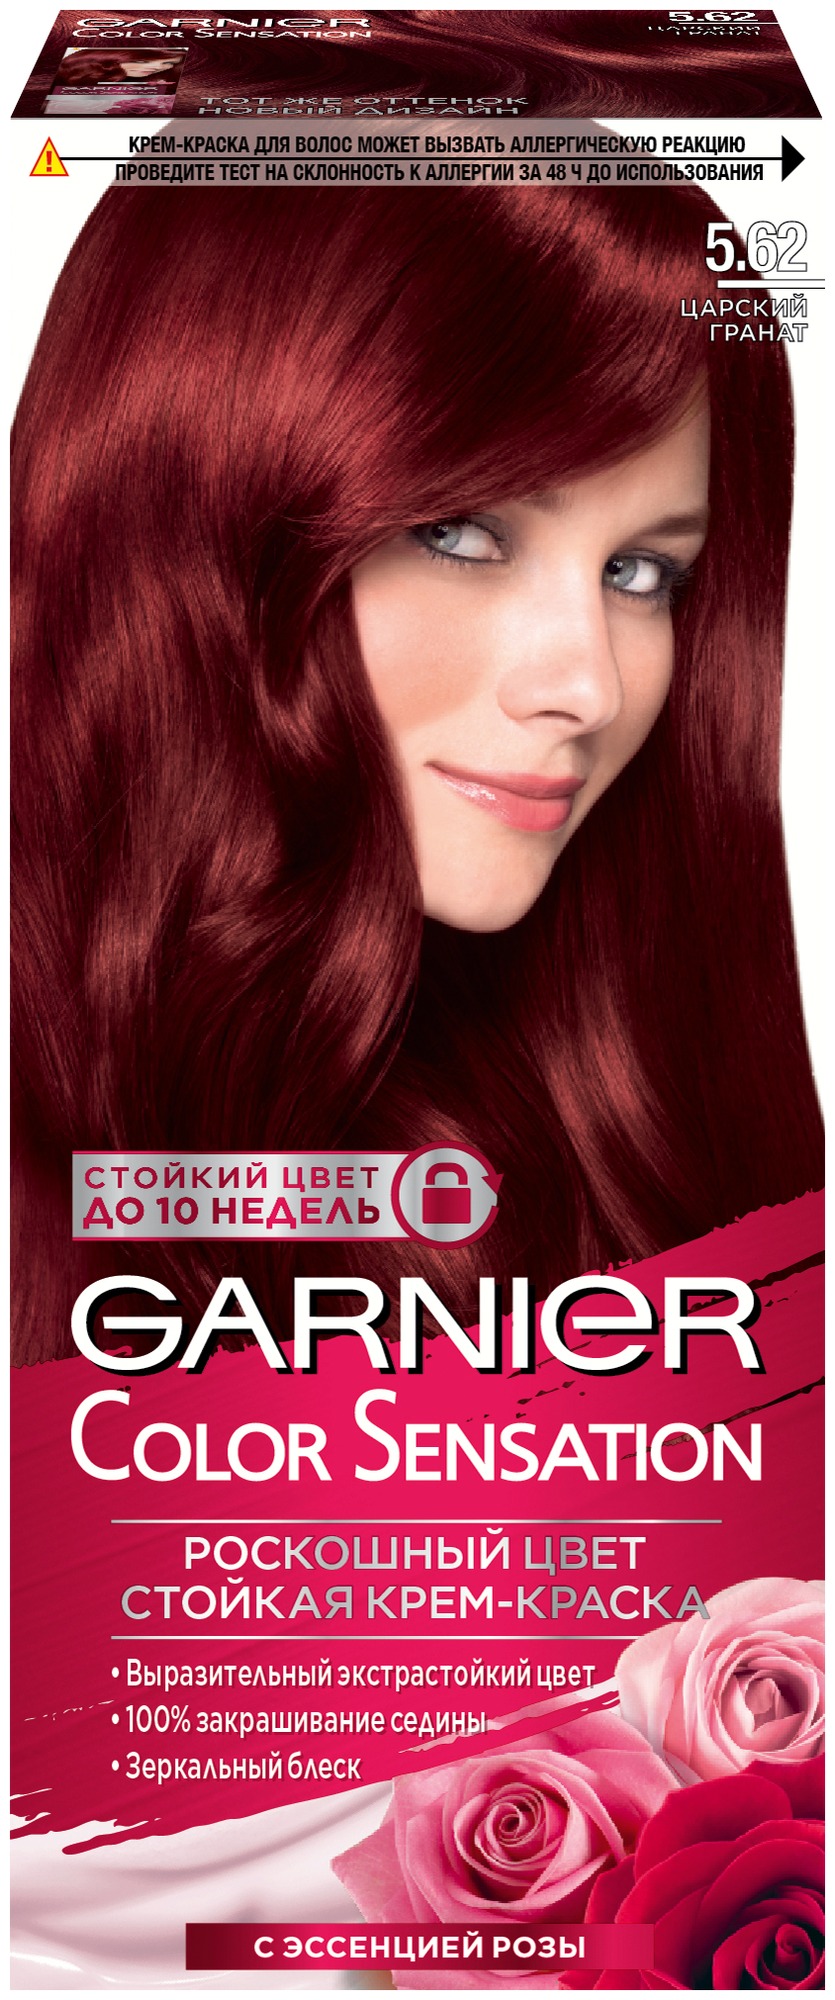 GARNIER Color Sensation стойкая крем-краска для волос, 5.62, Царский гранат